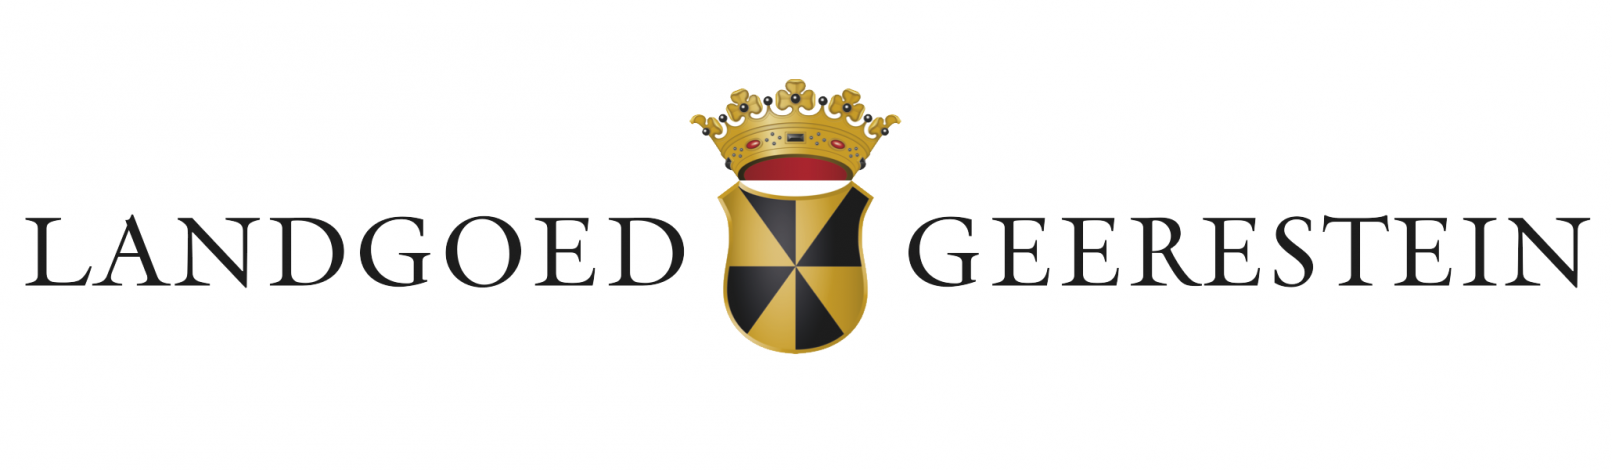 Landgoed Geerestein logo